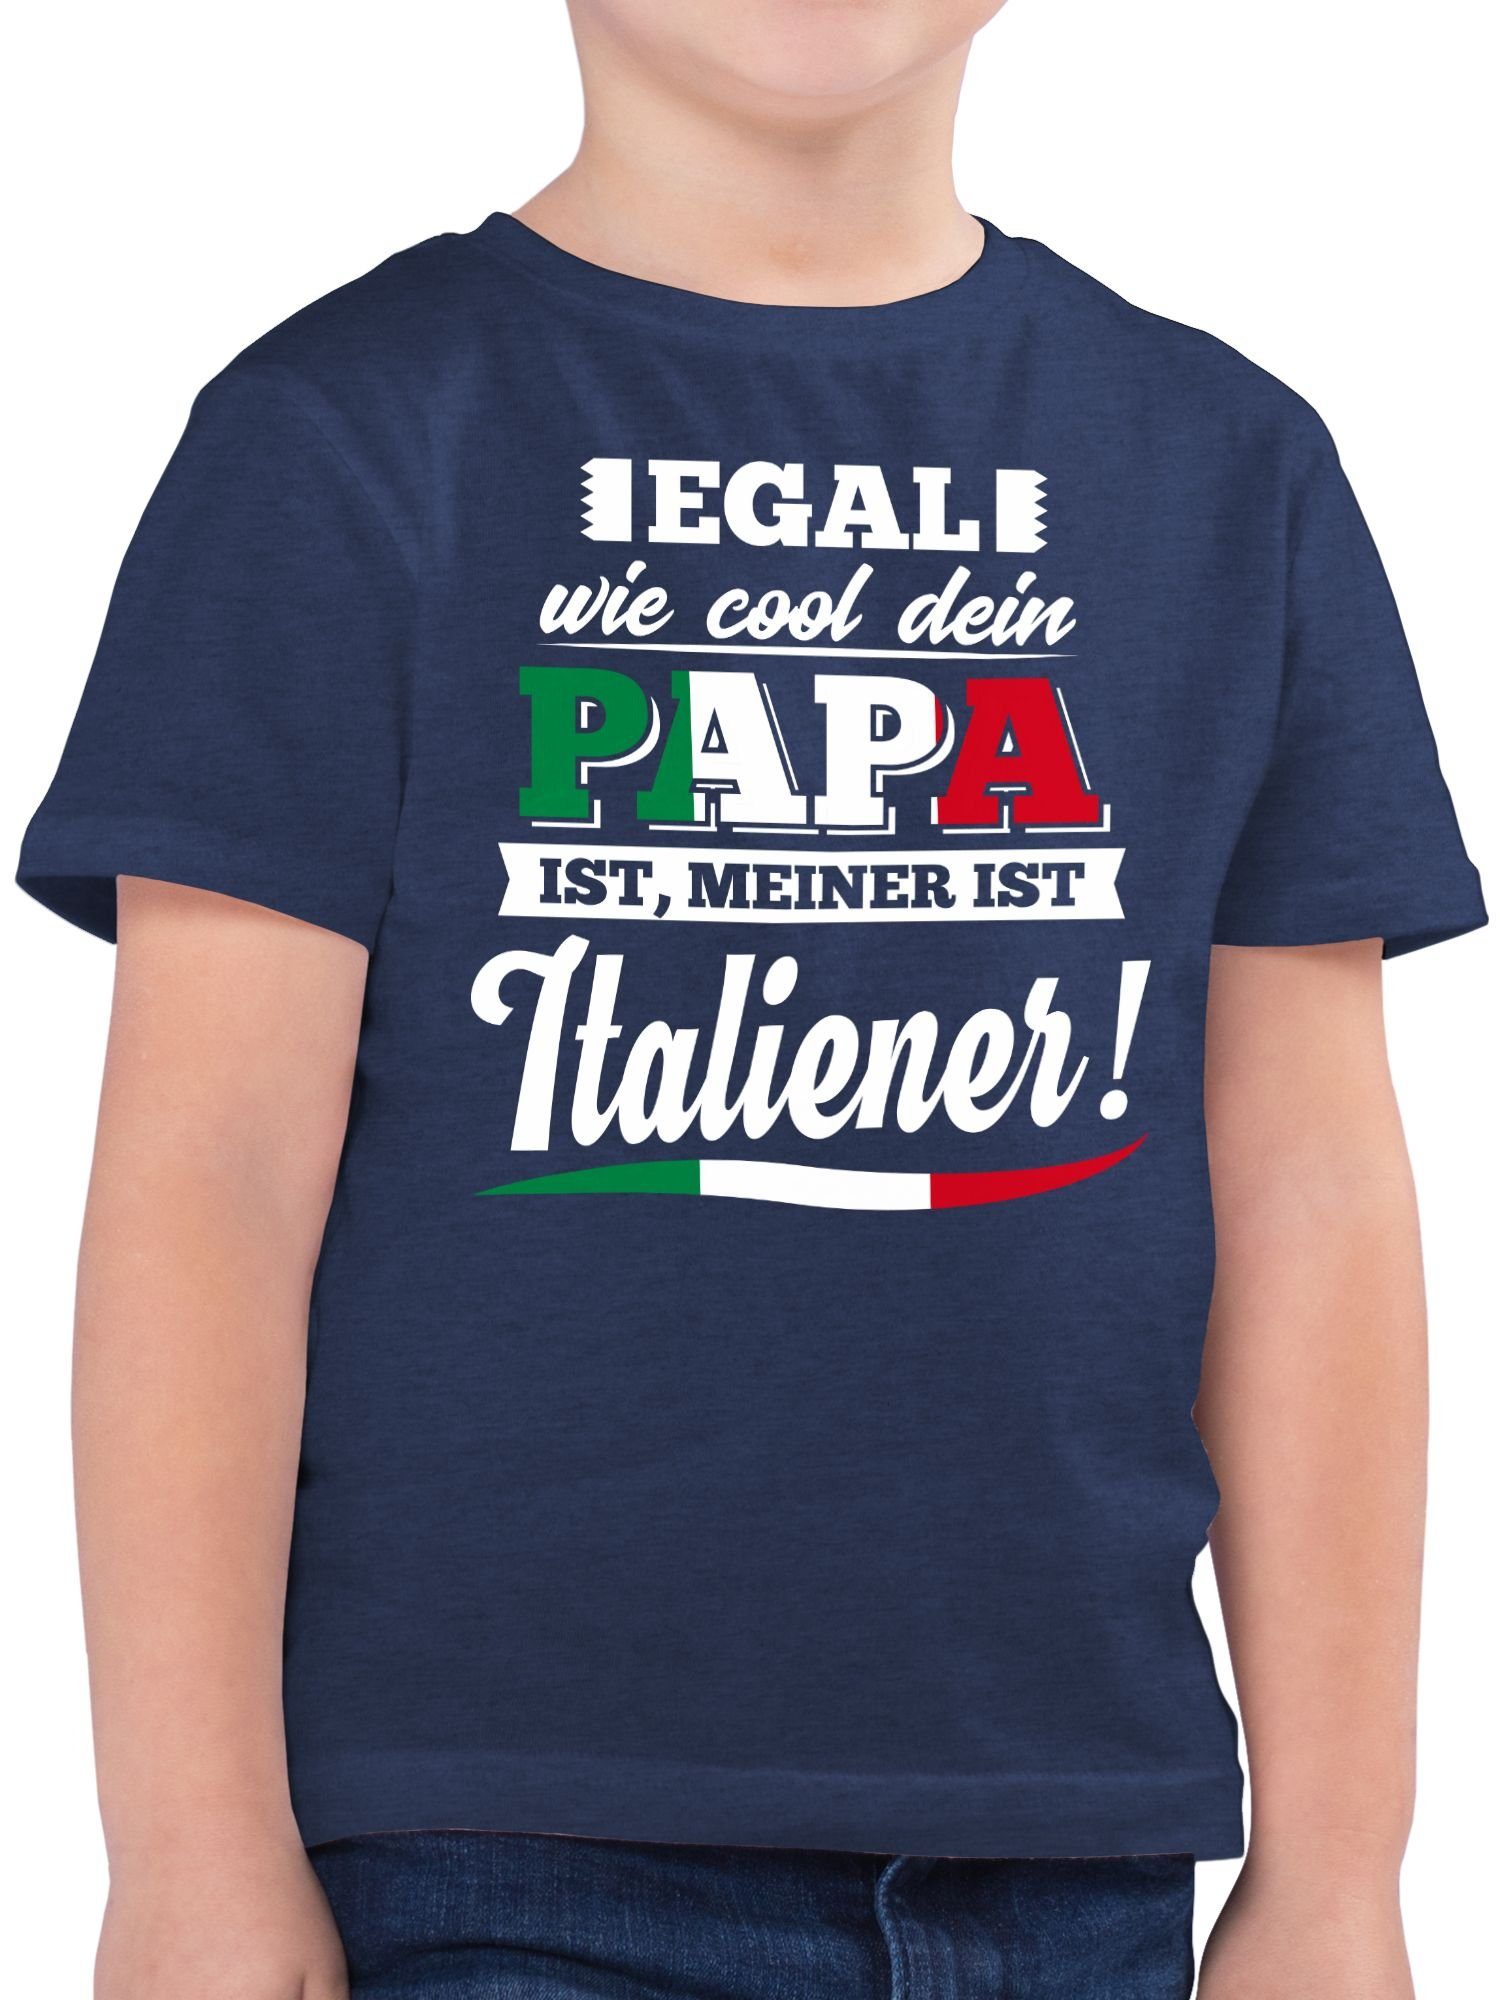 T-Shirt wie ist Statement 1 Cool Sprüche meiner Egal Italiener Papa Meliert Shirtracer dein Dunkelblau Kinder